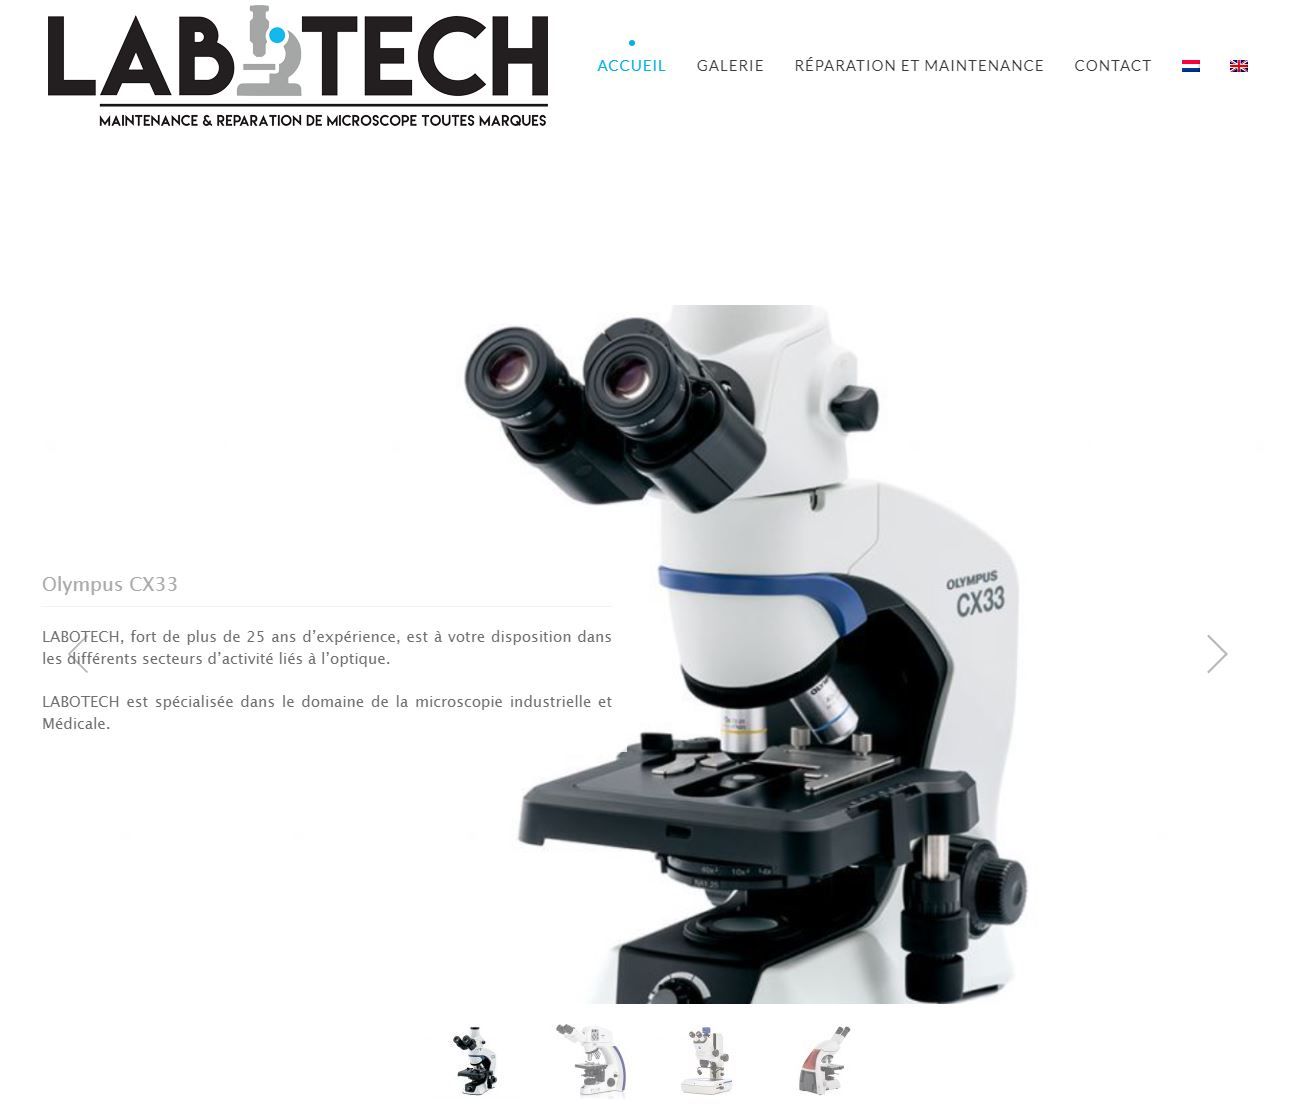 Labotech : maintenance et entretien de microscopes en Belgique